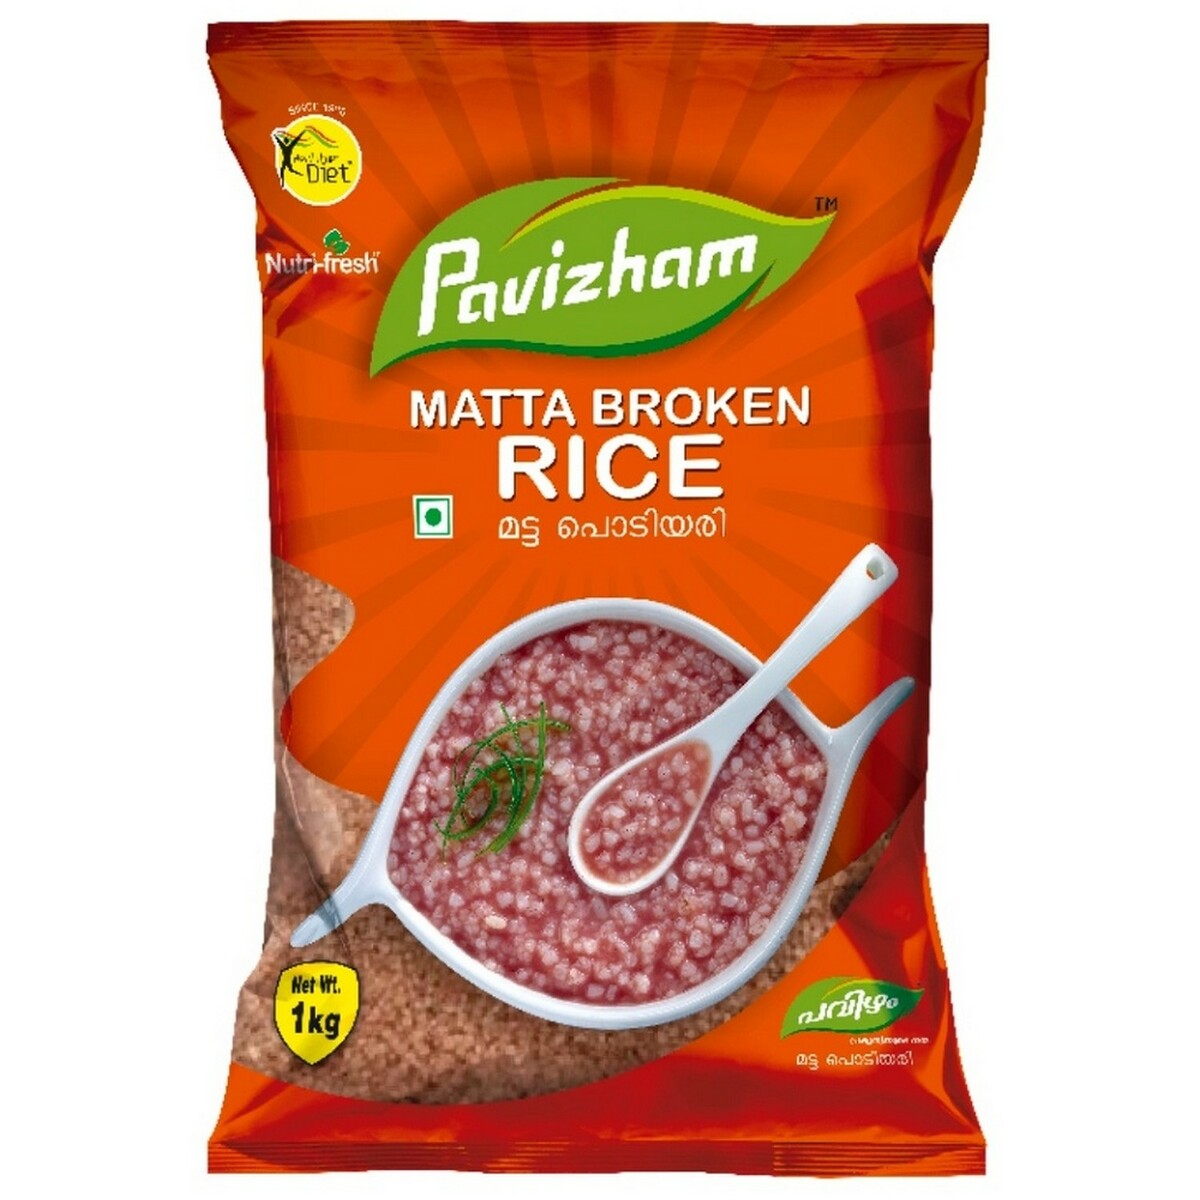 Pavizham Matta Broken Rice 1kg